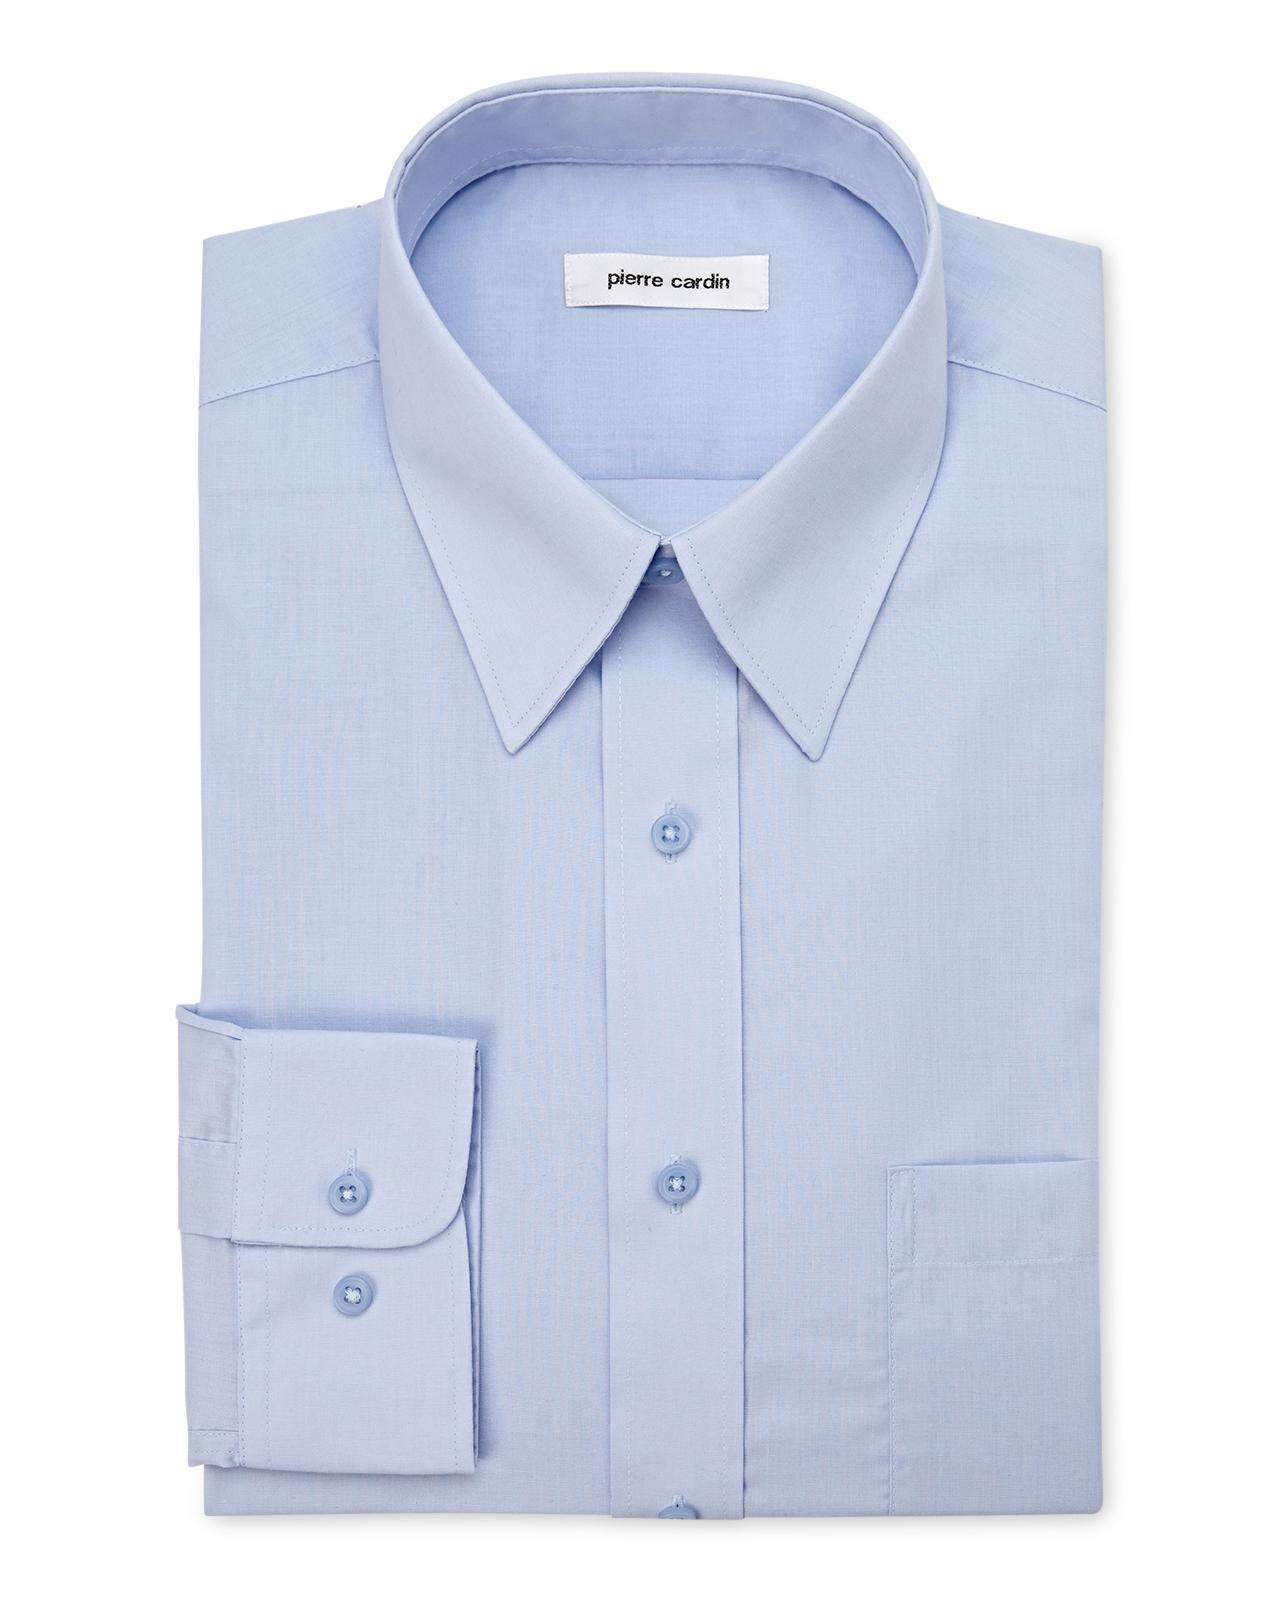 Lyst - Pierre Cardin Pale Blue Dress Shirt in Blue for Men